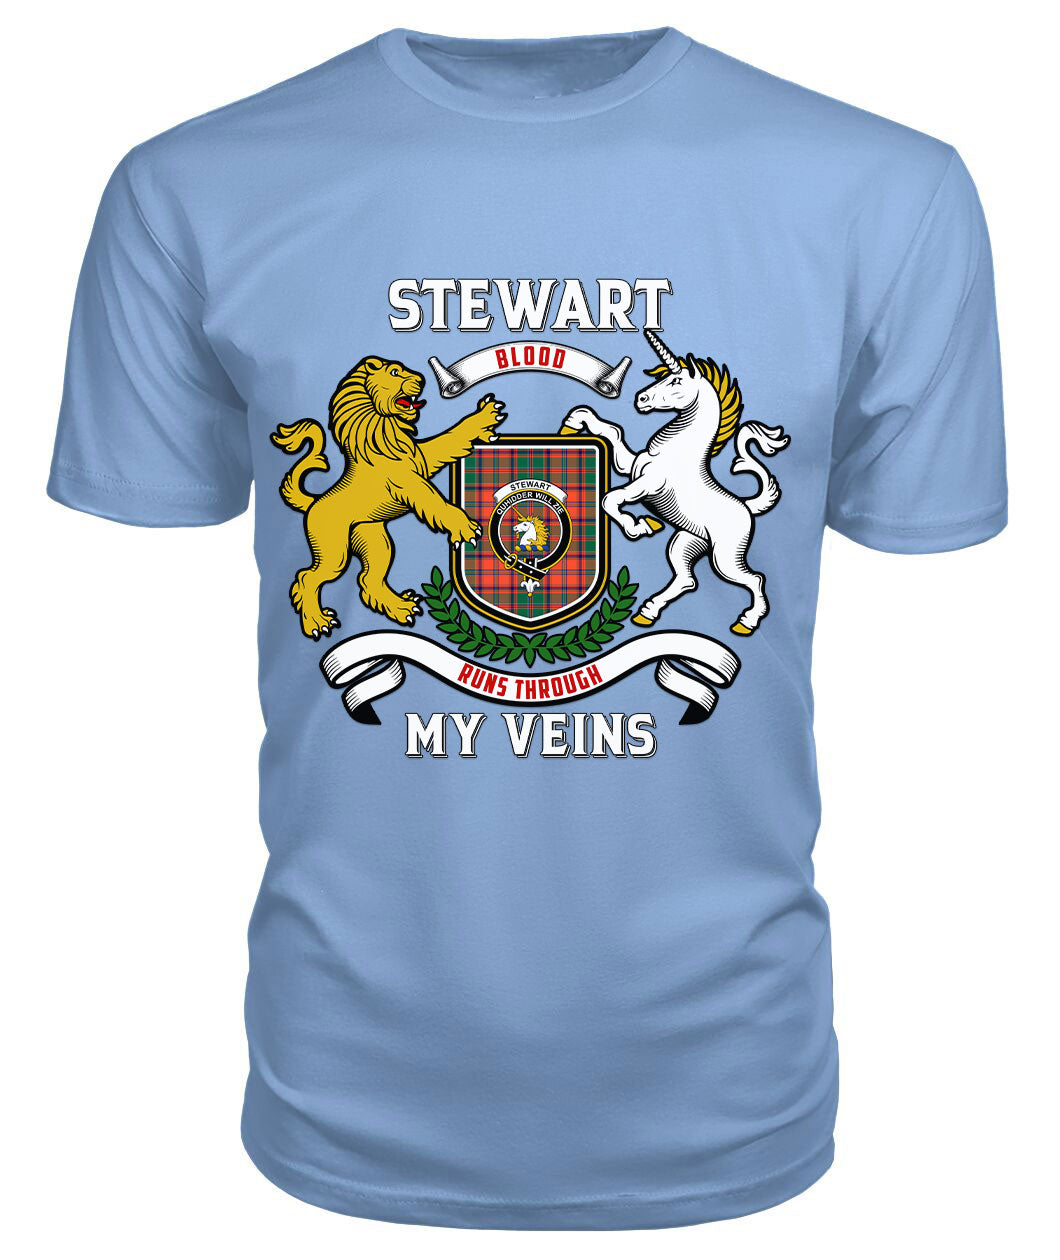 Stewart of Appin Ancient Tartan Crest 2D T-shirt - Blood Runs Through My Veins Style